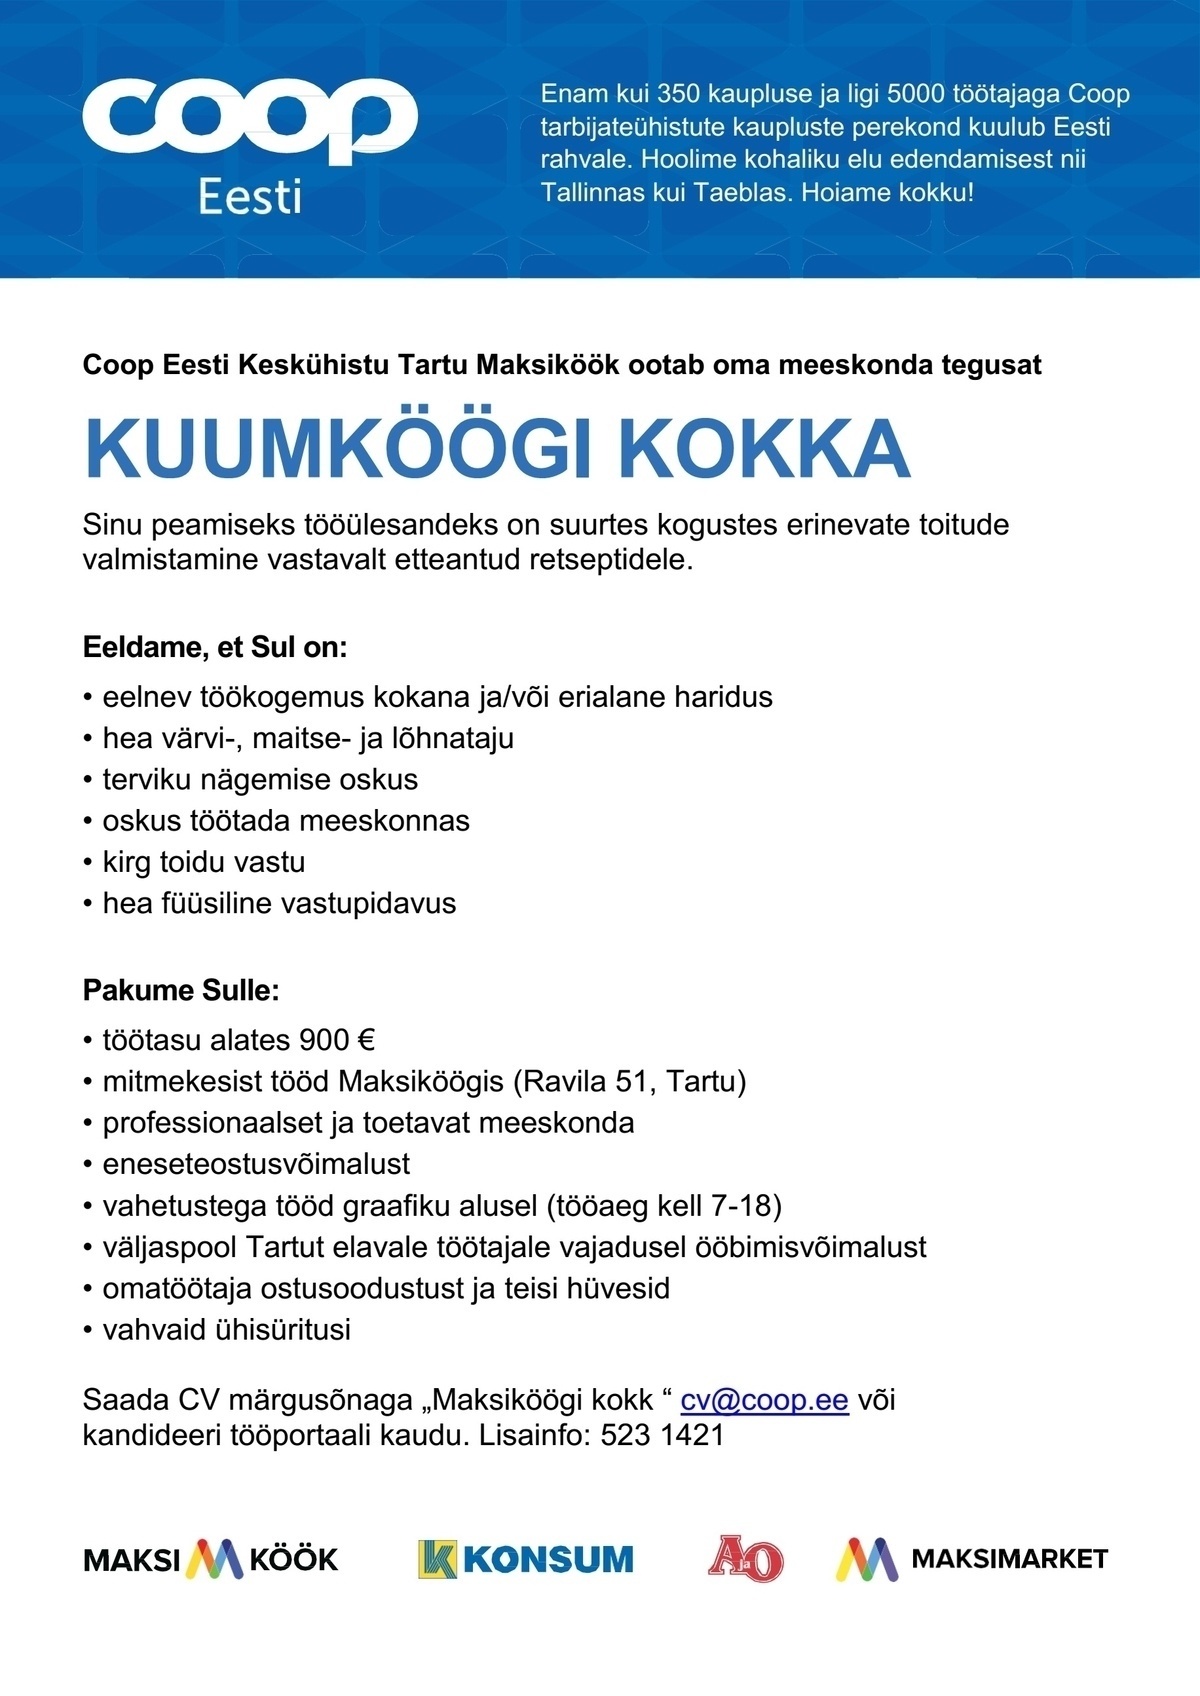 Coop Eesti Keskühistu Kuumköögi kokk (Maksiköök)